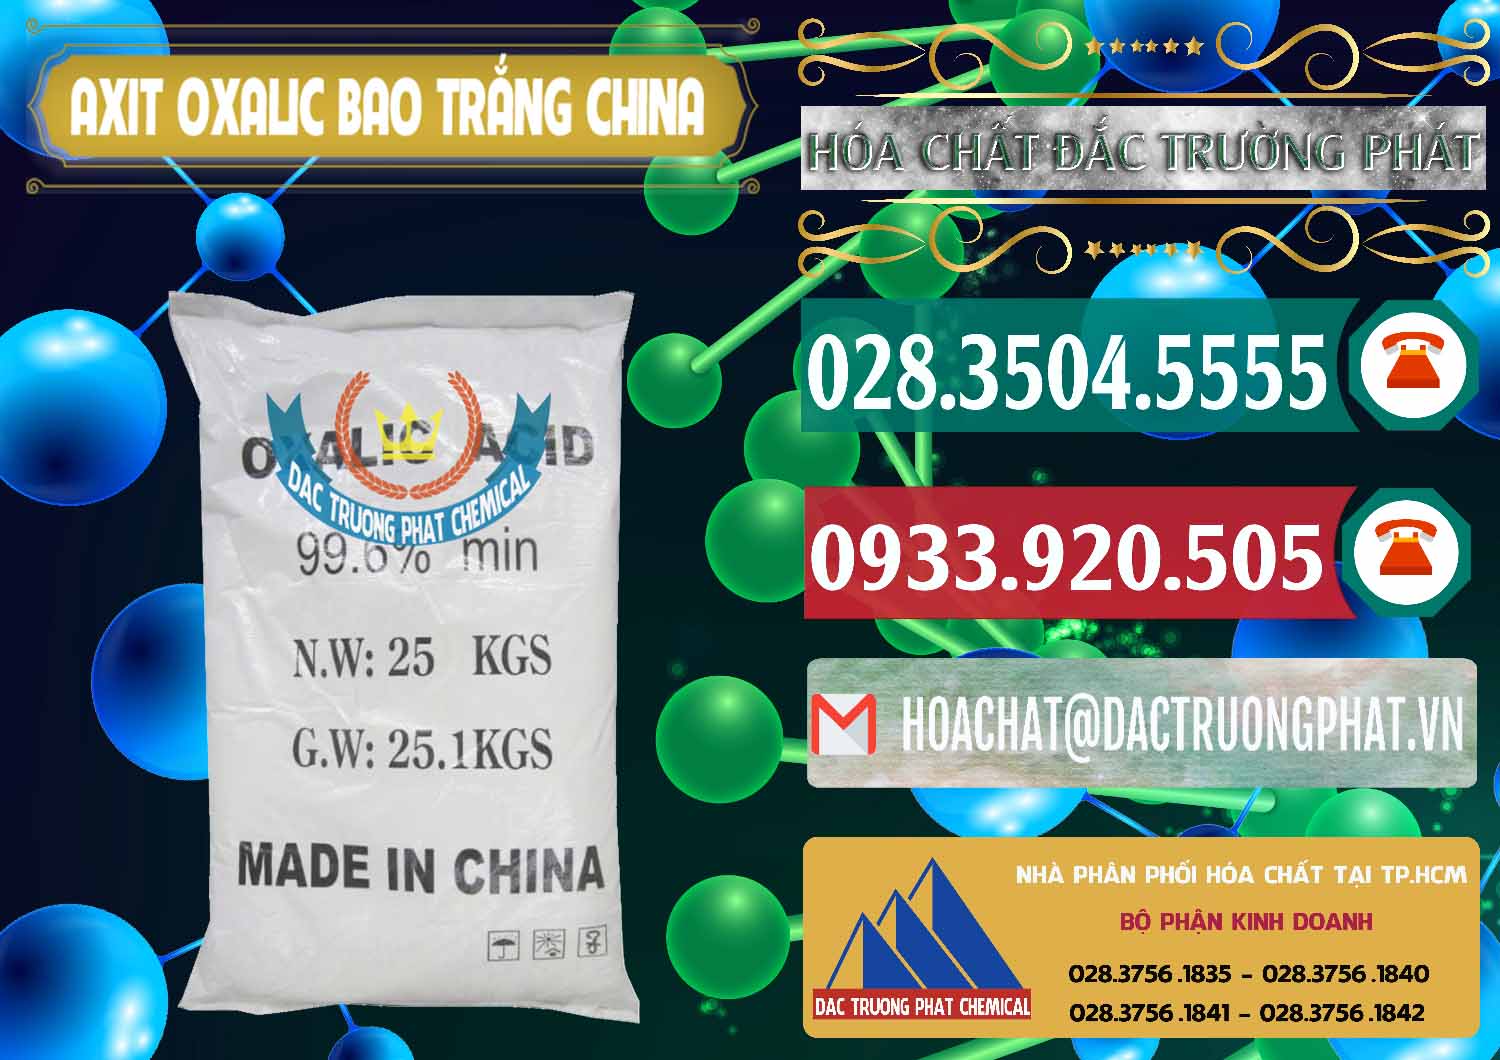 Cty chuyên bán _ cung cấp Acid Oxalic – Axit Oxalic 99.6% Bao Trắng Trung Quốc China - 0270 - Phân phối và kinh doanh hóa chất tại TP.HCM - muabanhoachat.vn